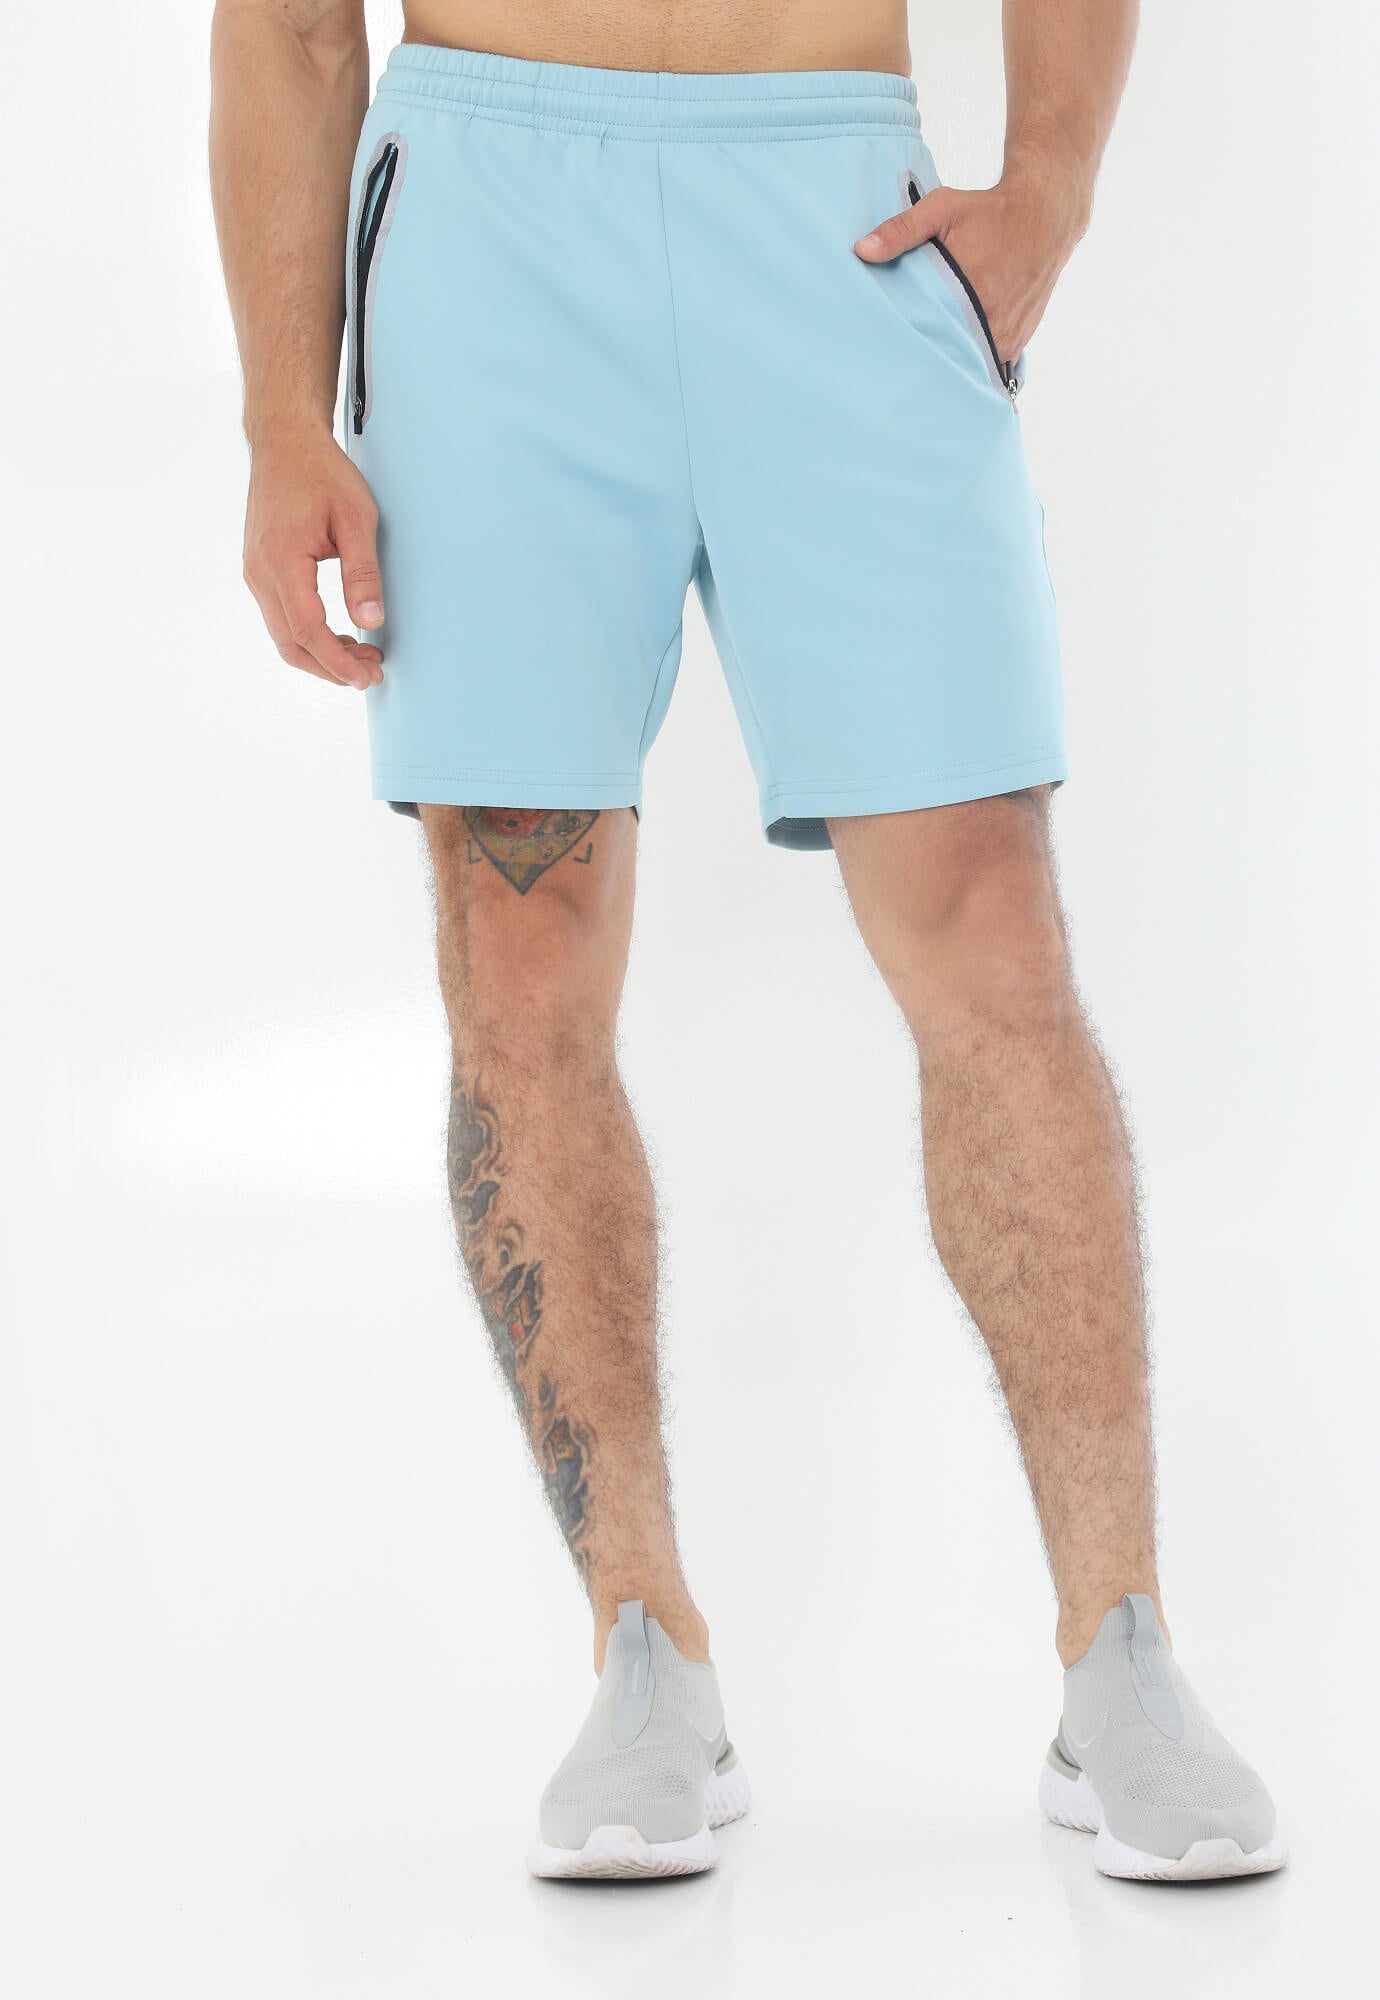 Pantaloneta Deportiva Azul Con Detalle Reflectivo En Los Bolsillos Para Hombre